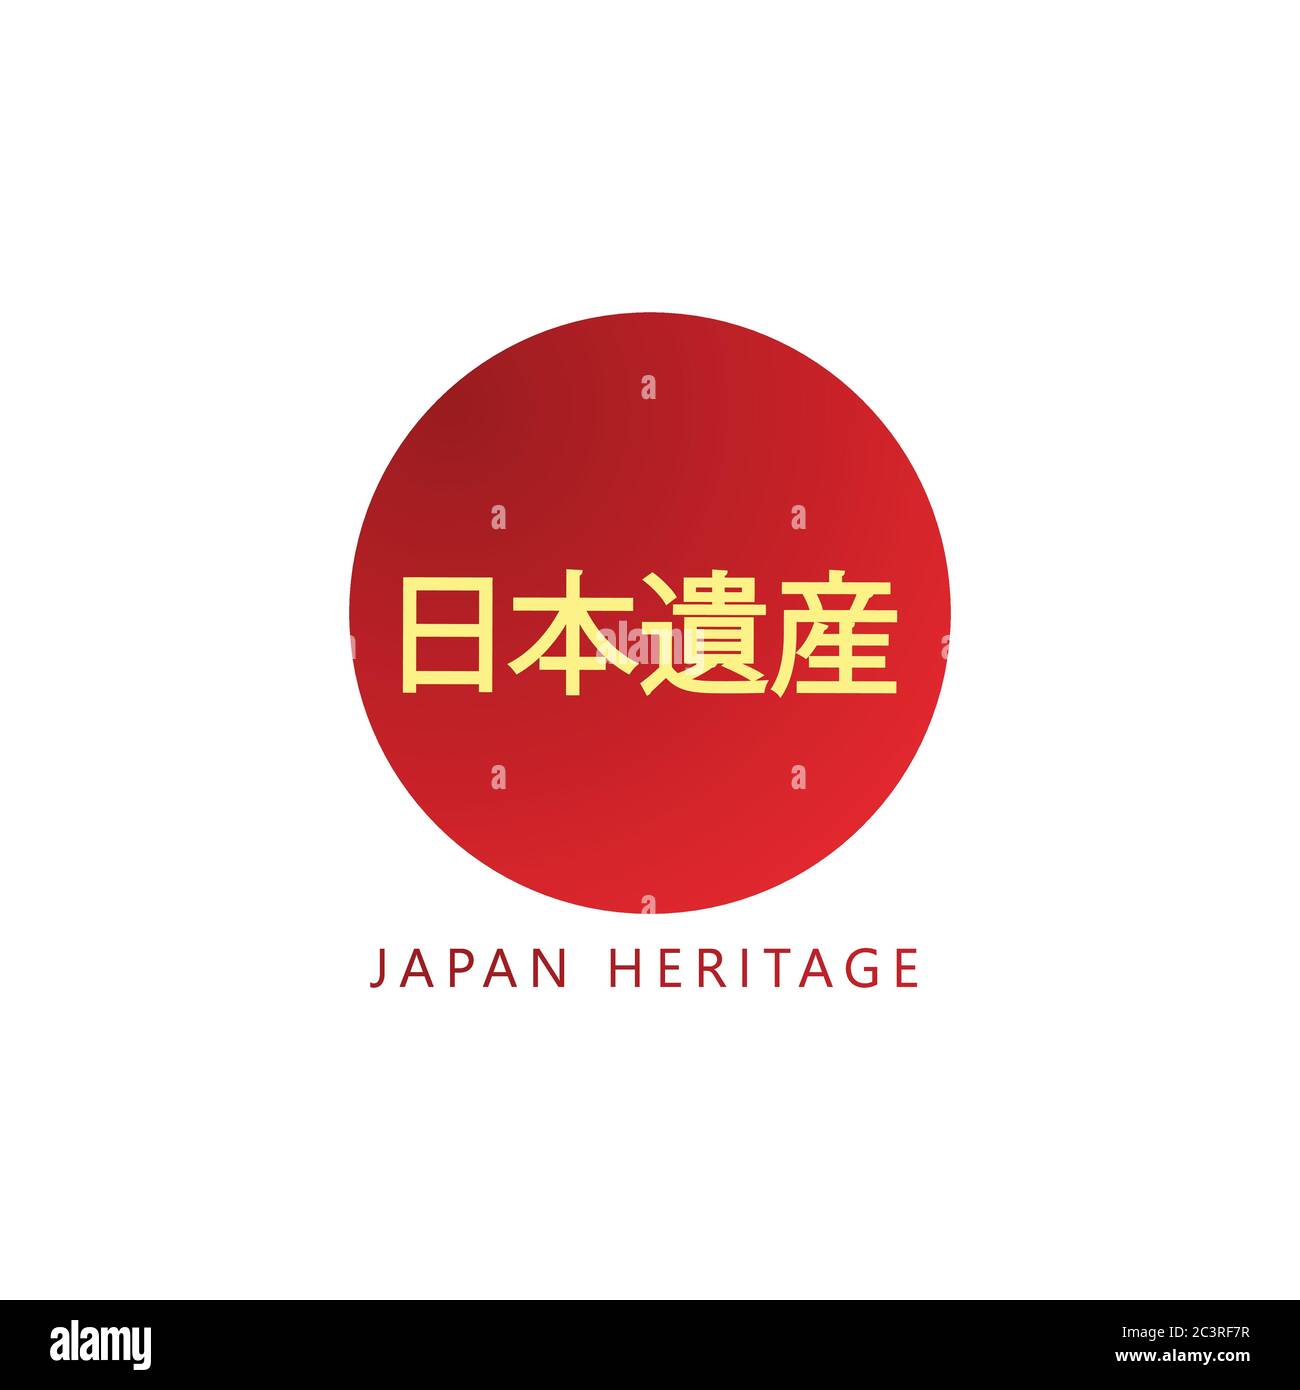 Le logo vecteur du patrimoine japonais est rouge et présente une couleur de culture caractéristique Illustration de Vecteur